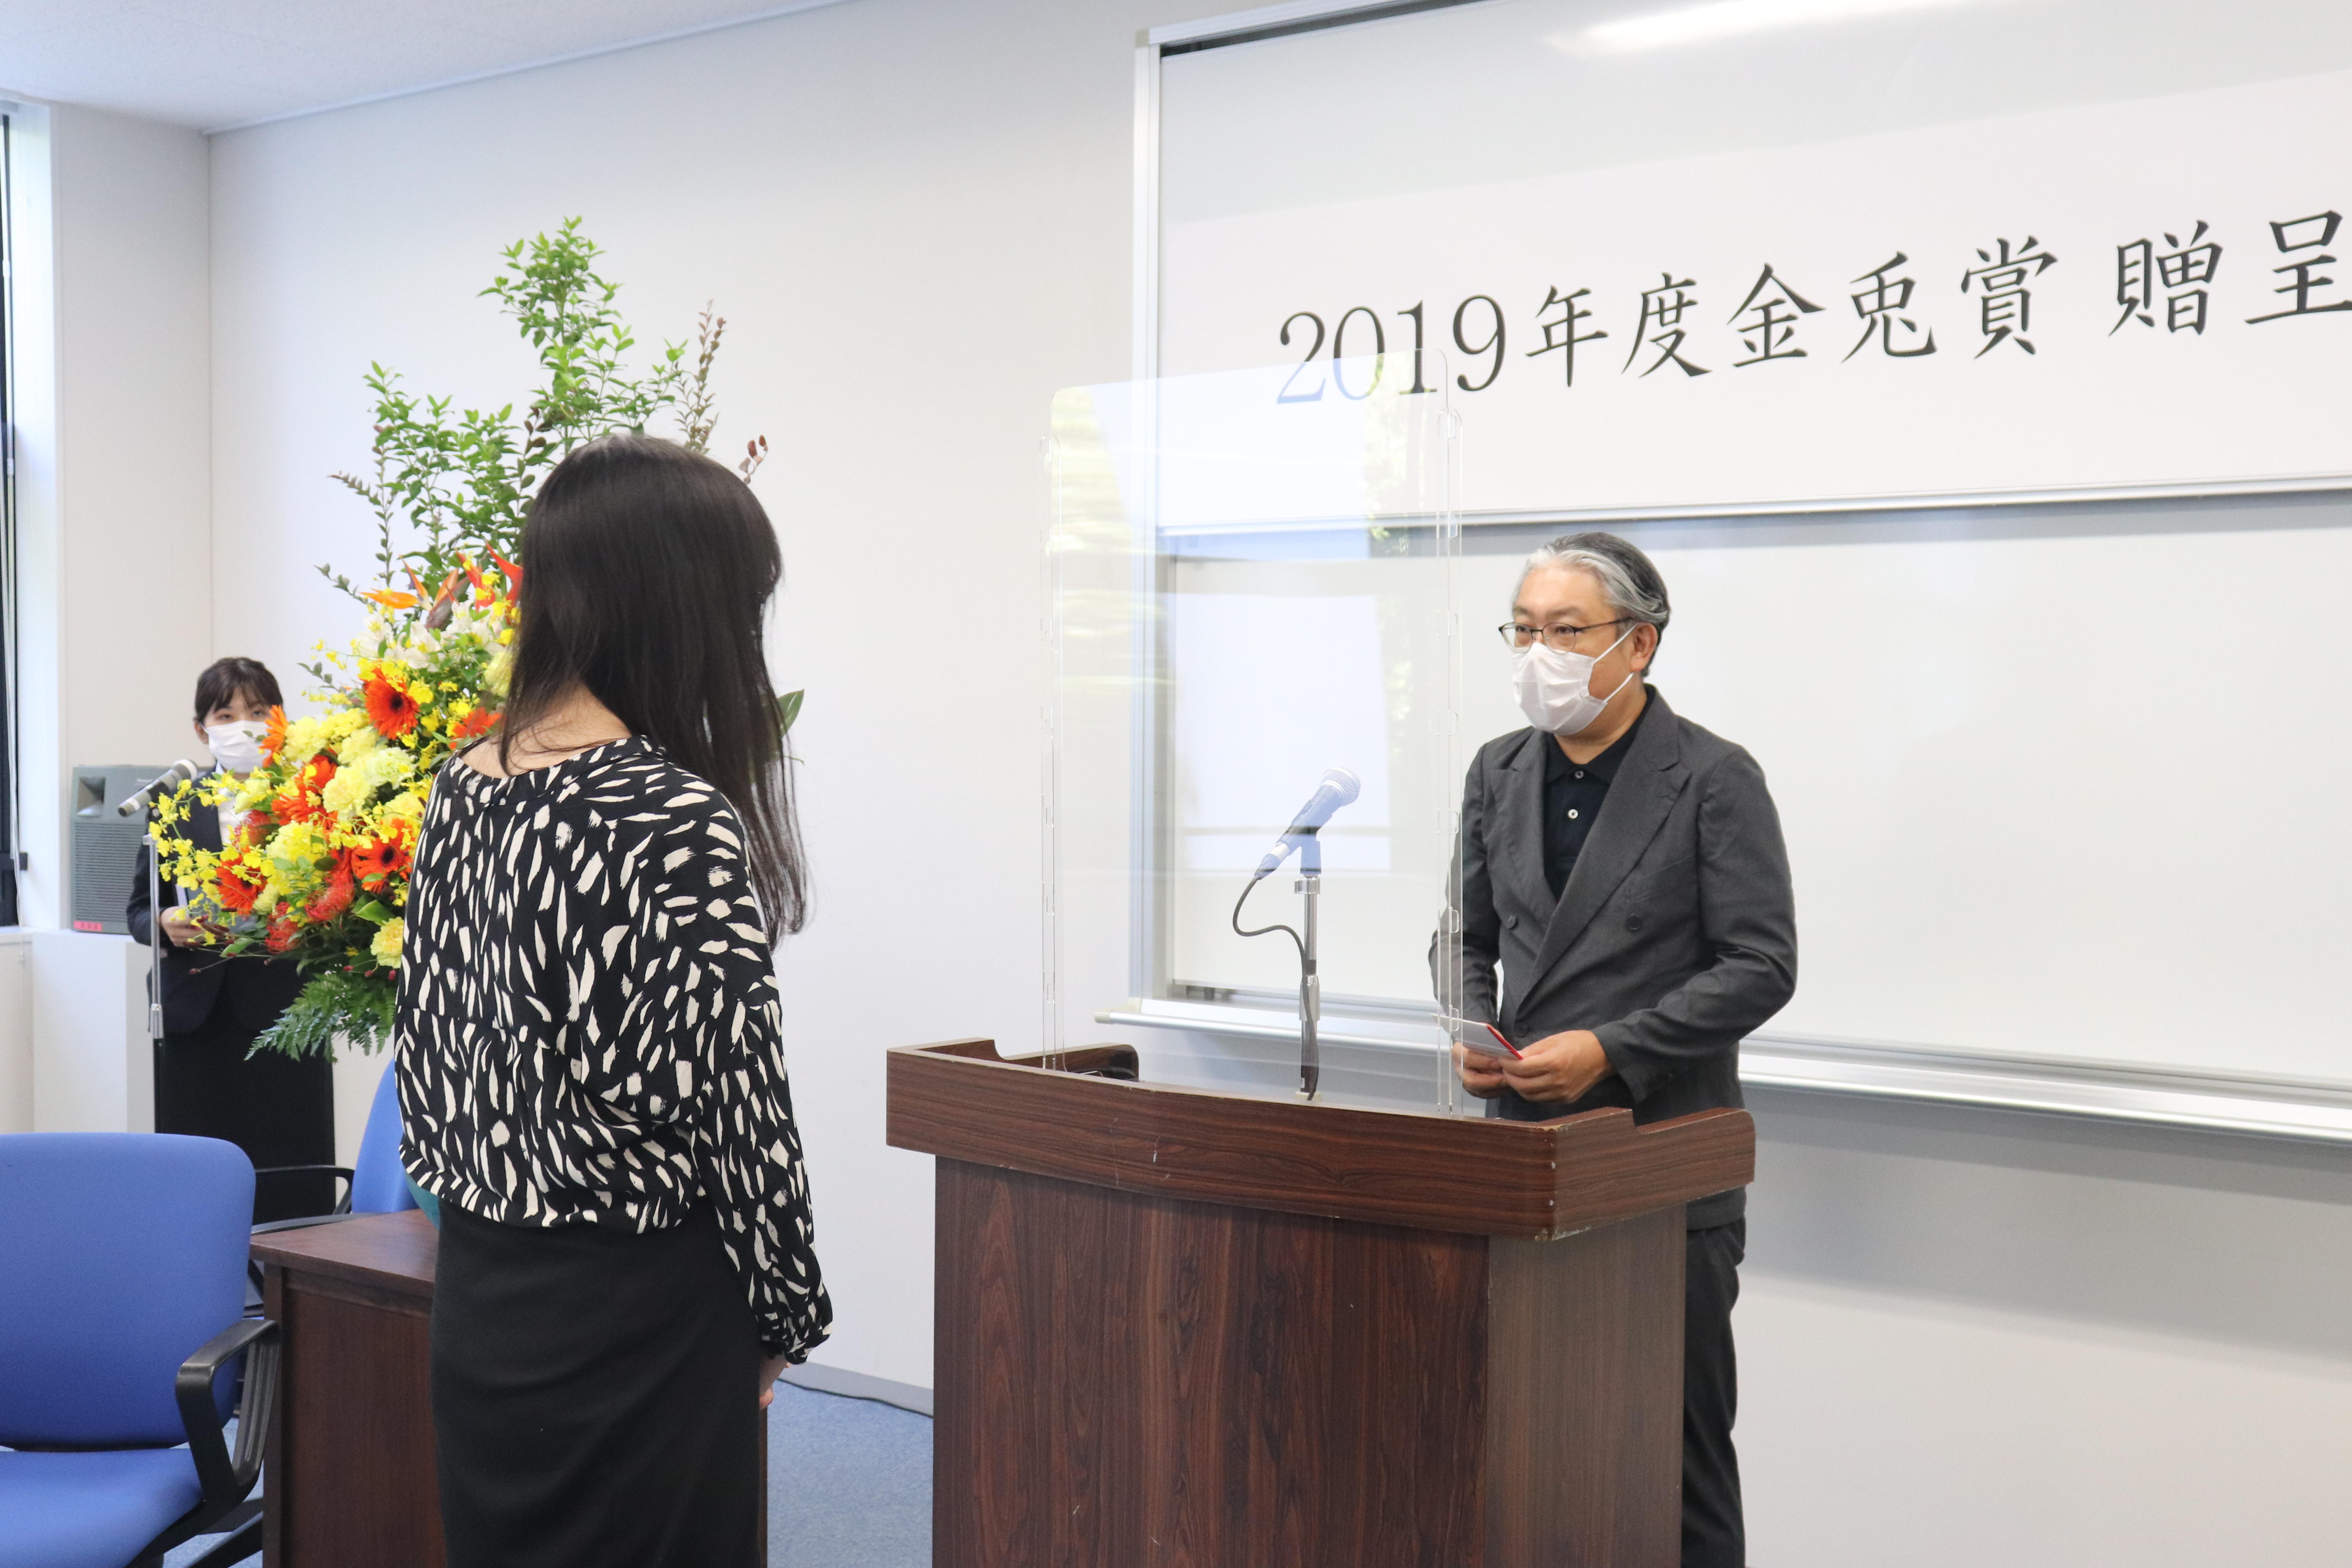 横浜美術大学が「2019年度 金兎賞」の授賞式を開催 -- 絵画専攻卒業生の横野奈々さんが受賞